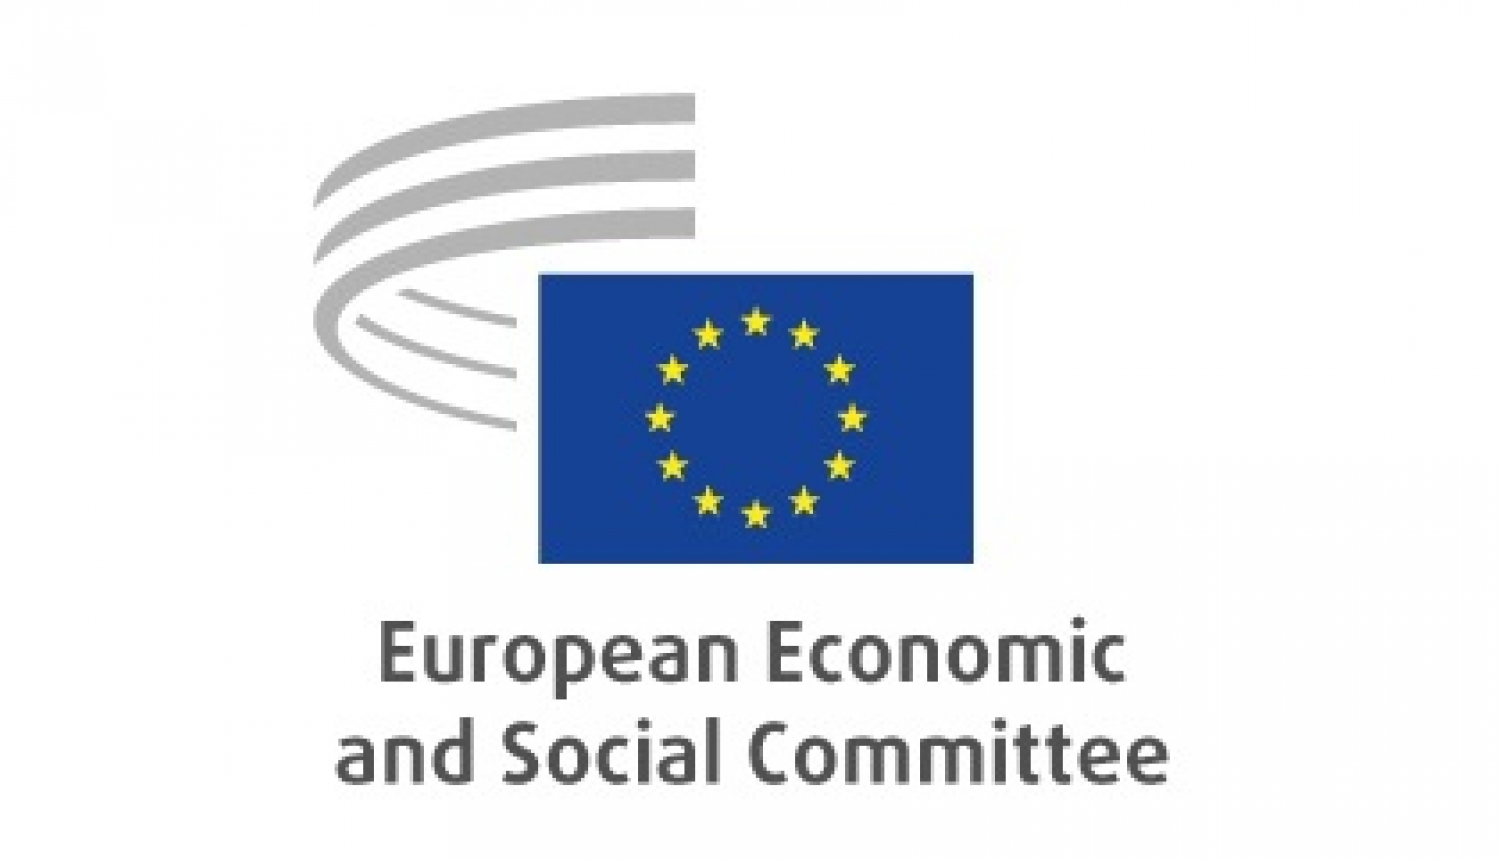 Latvijas Brīvo arodbiedrību savienība atkārtoti izsludina konkursu uz 2 vietām Eiropas Ekonomikas un sociālo lietu komitejā Darba ņēmēju grupā laika periodam 2020.-2025.gadam